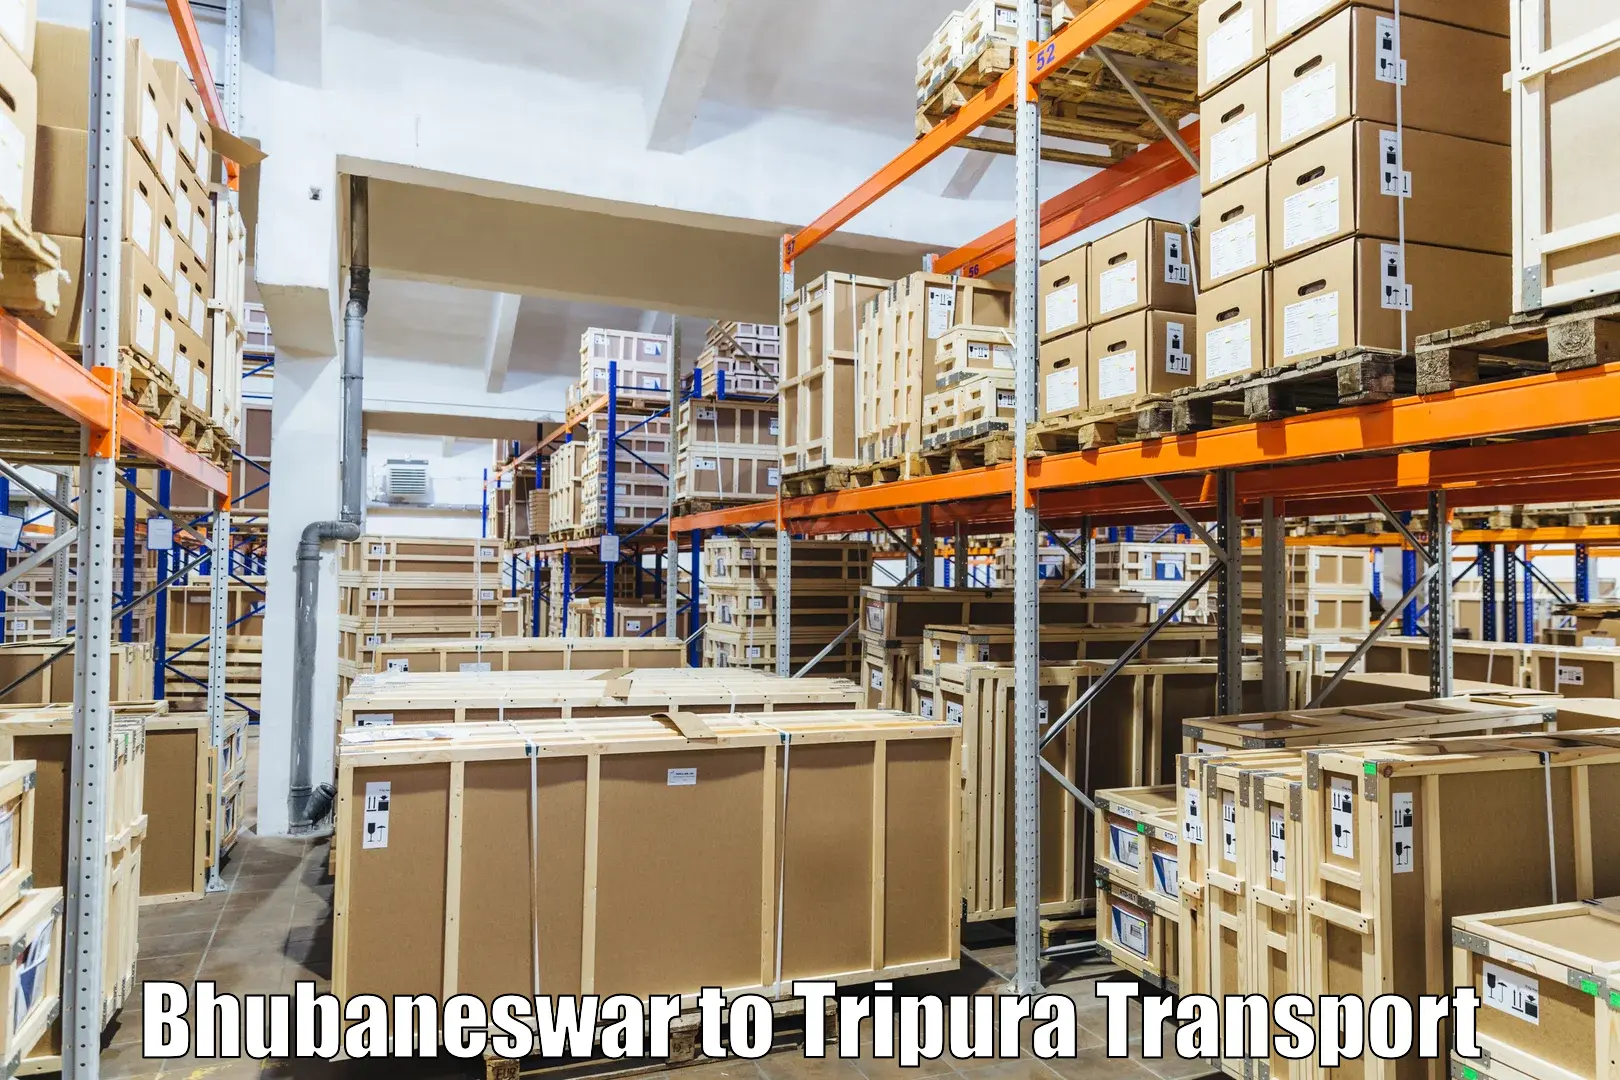 Furniture transport service Bhubaneswar to Khowai